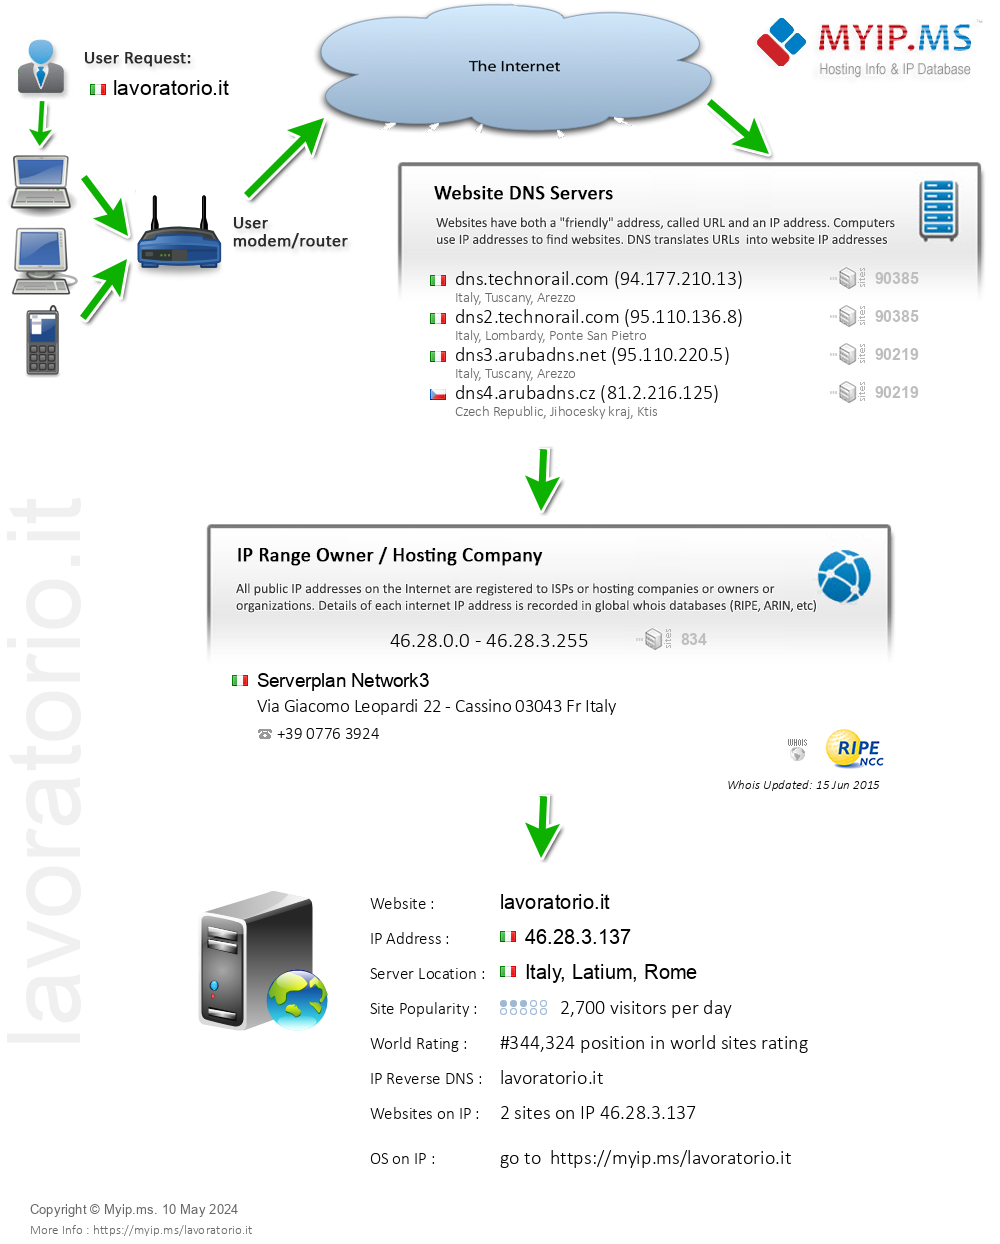 Lavoratorio.it - Website Hosting Visual IP Diagram